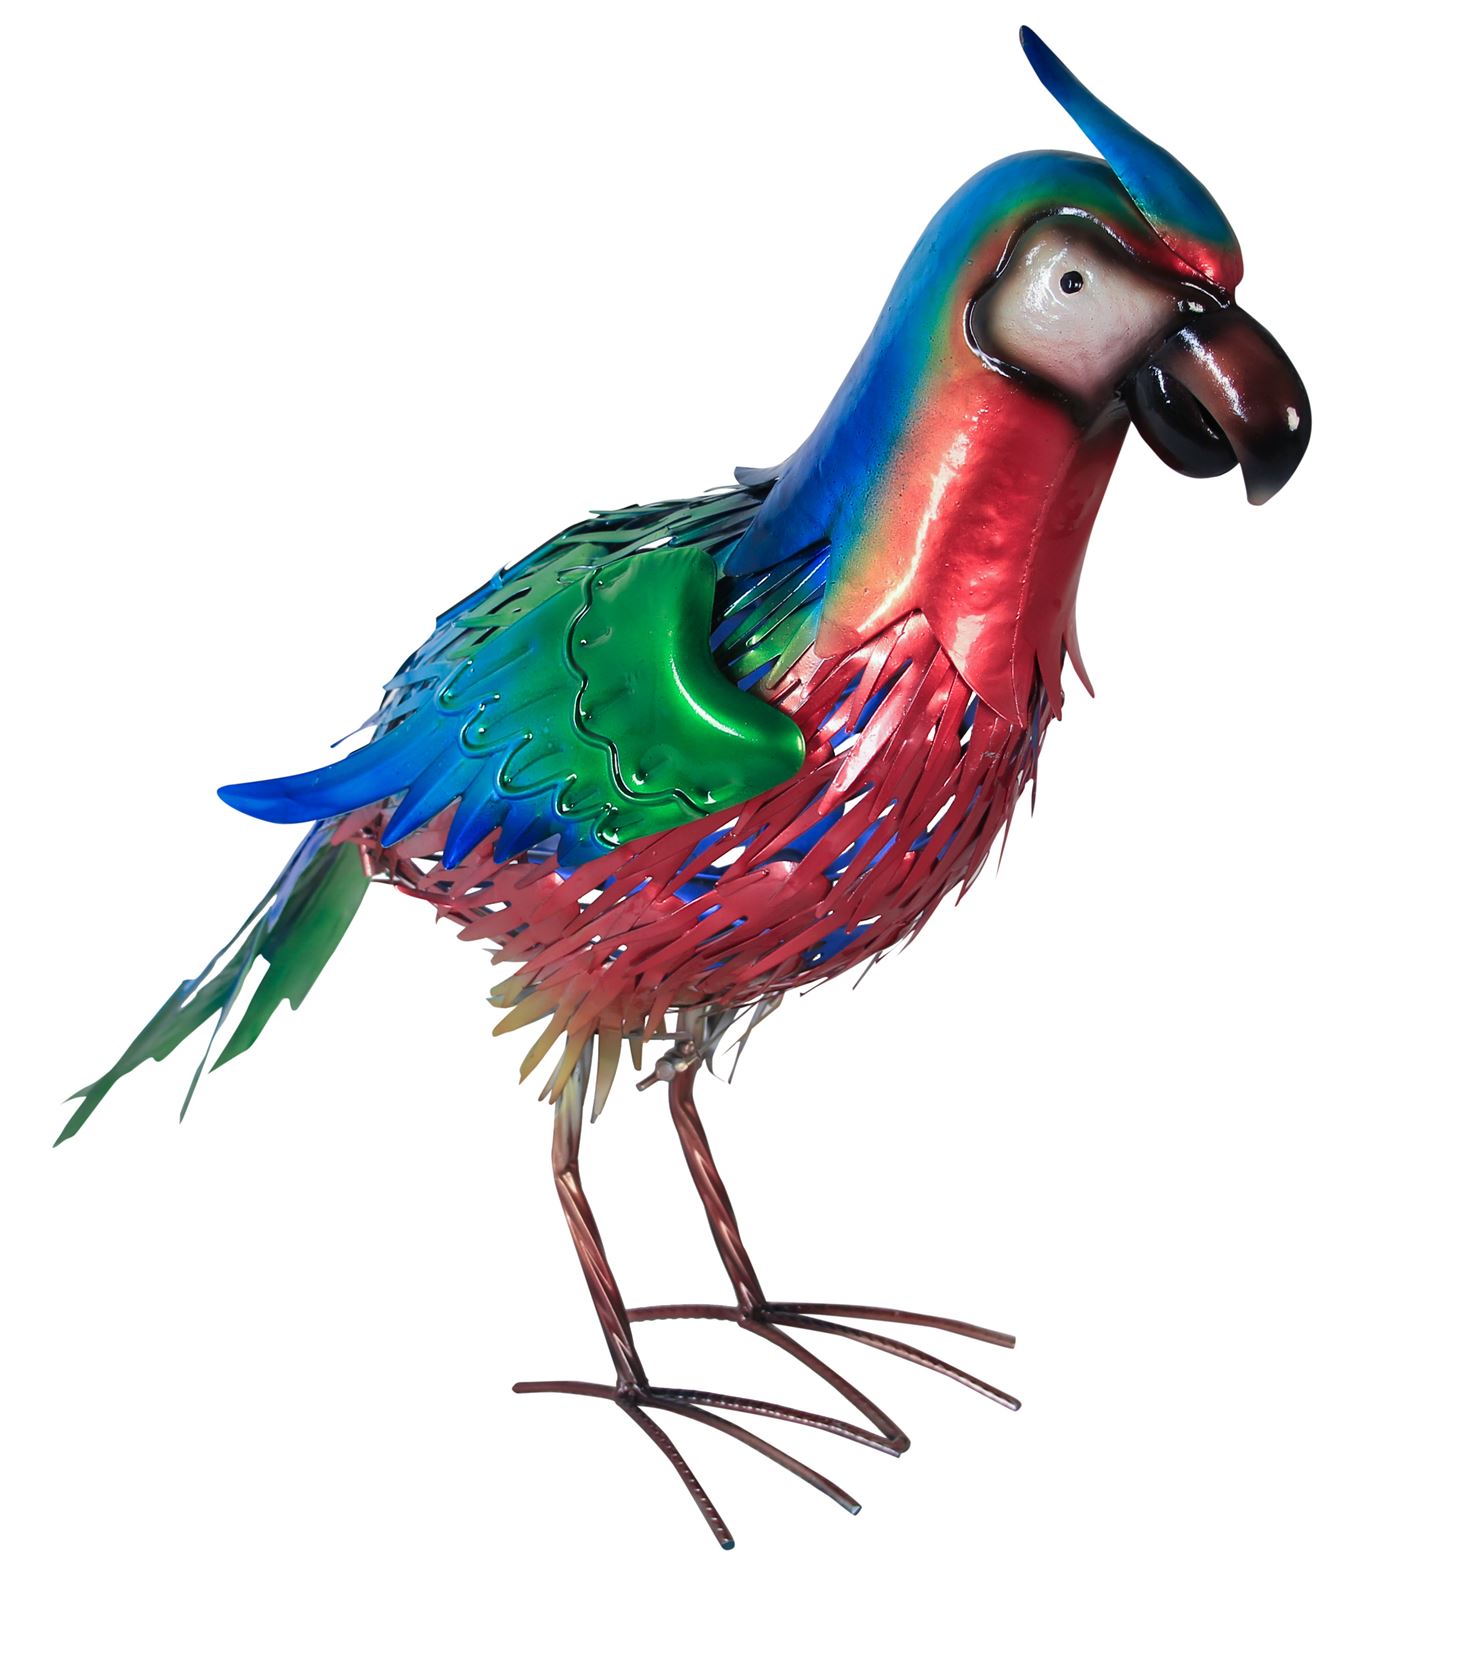 Tuinlamp-LED-solar-dierenlamp-parrot-bird